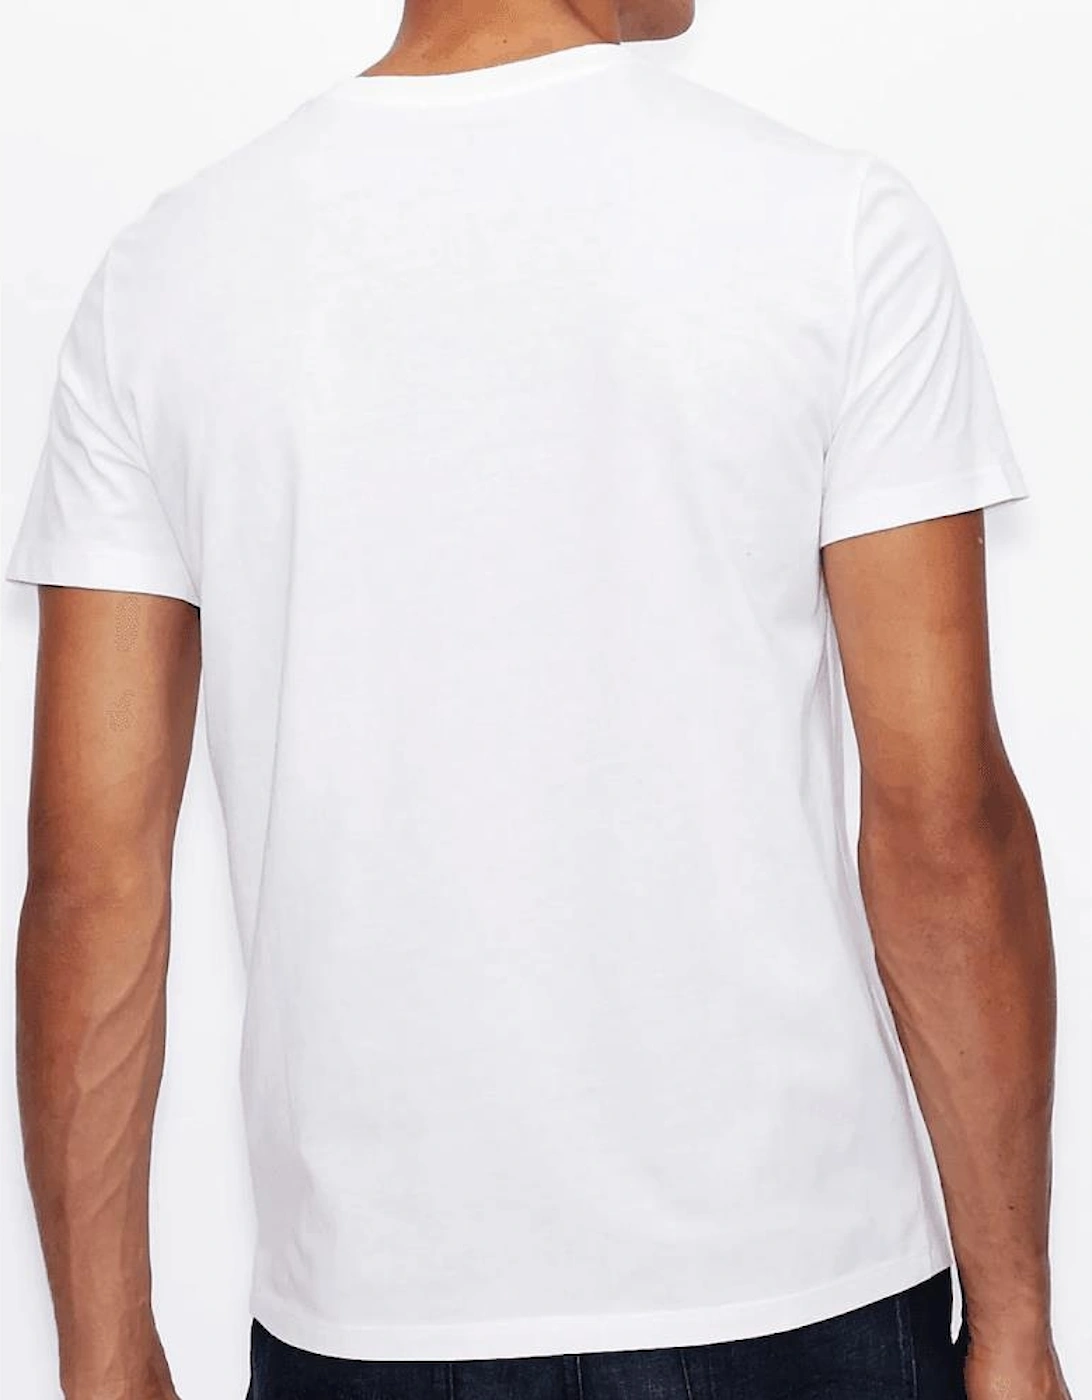 Cotton Milano/New York Logo White T-Shirt